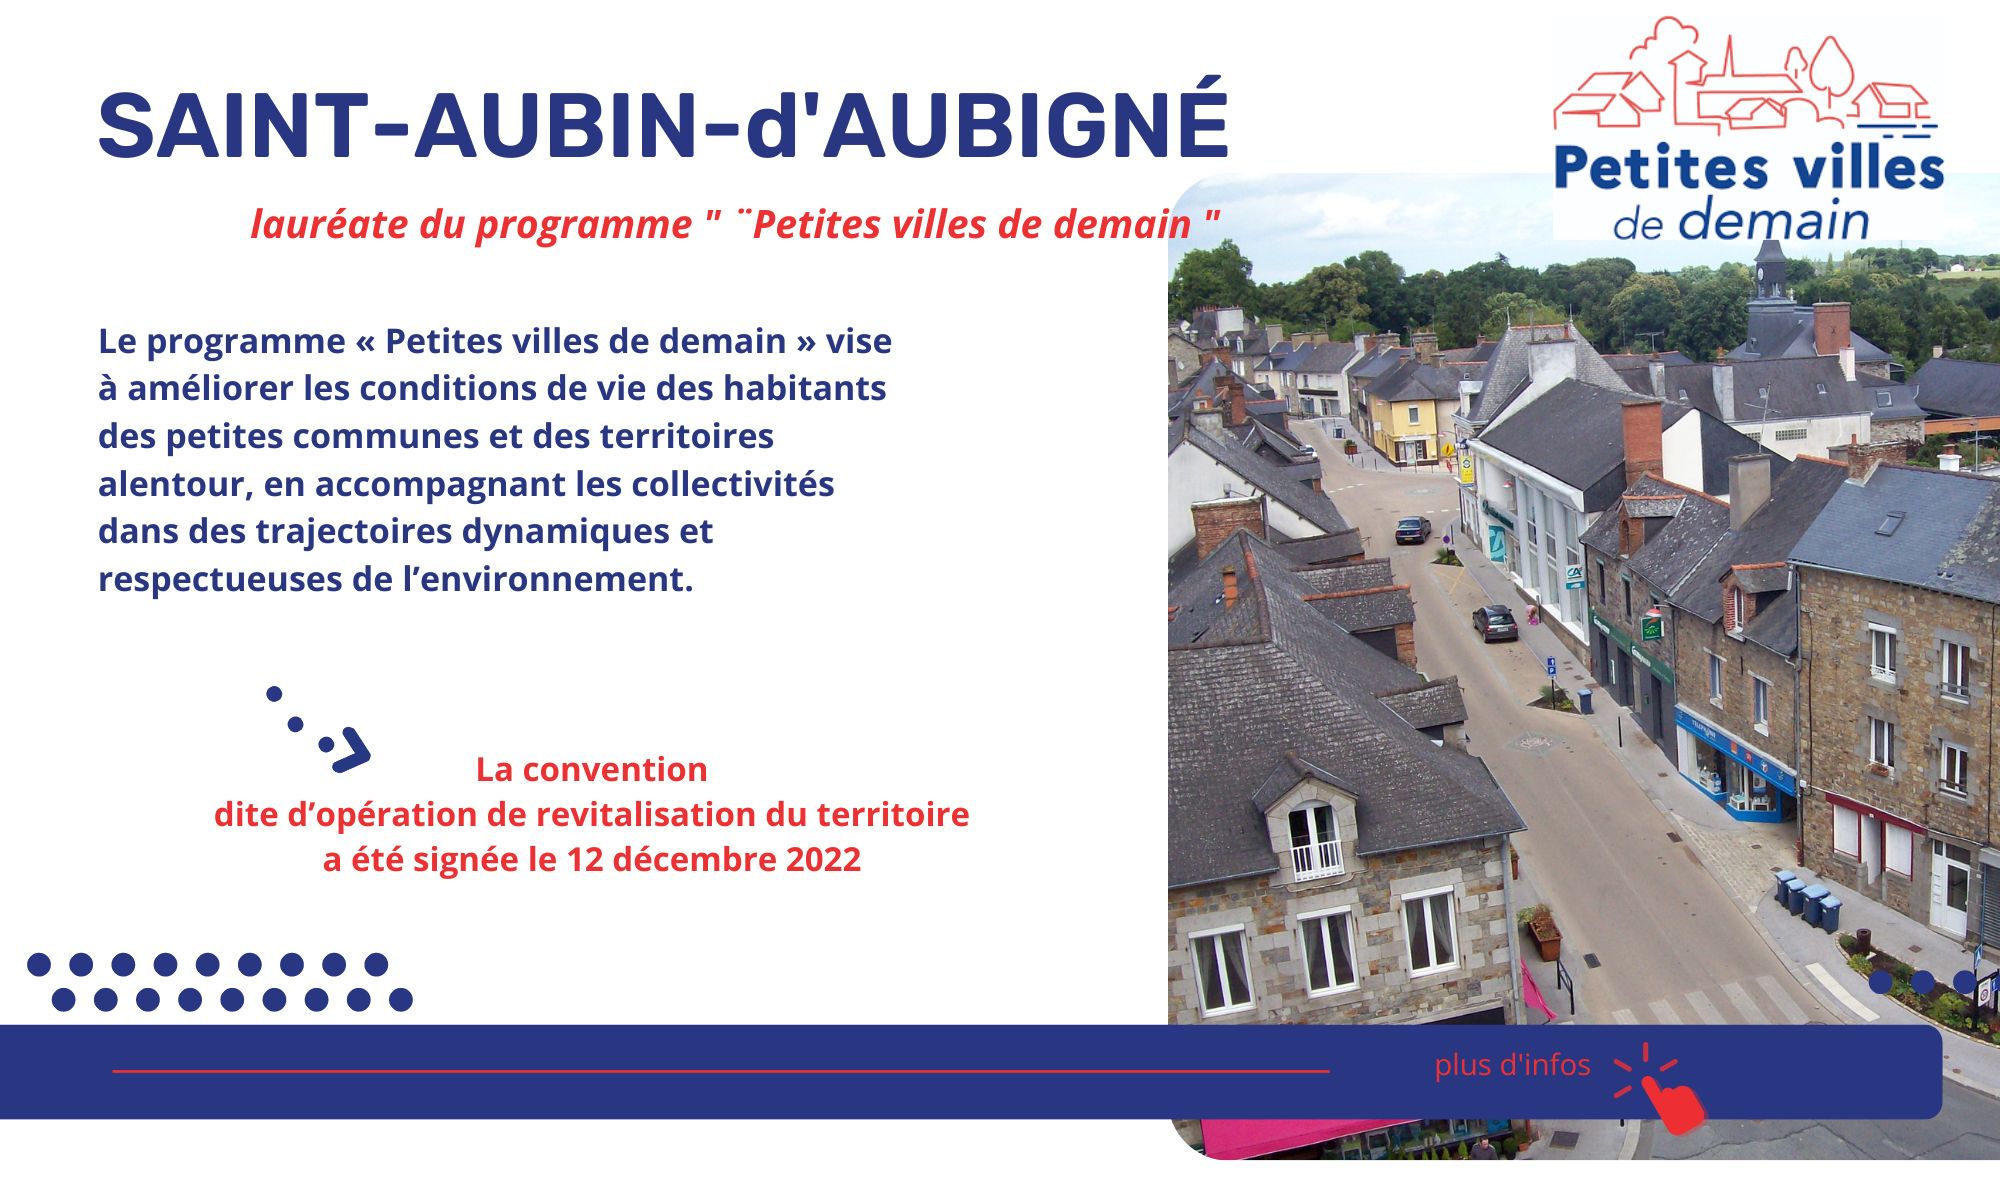 Saint-Aubin-d'Aubigné, lauréate de "Petites villes de demain"